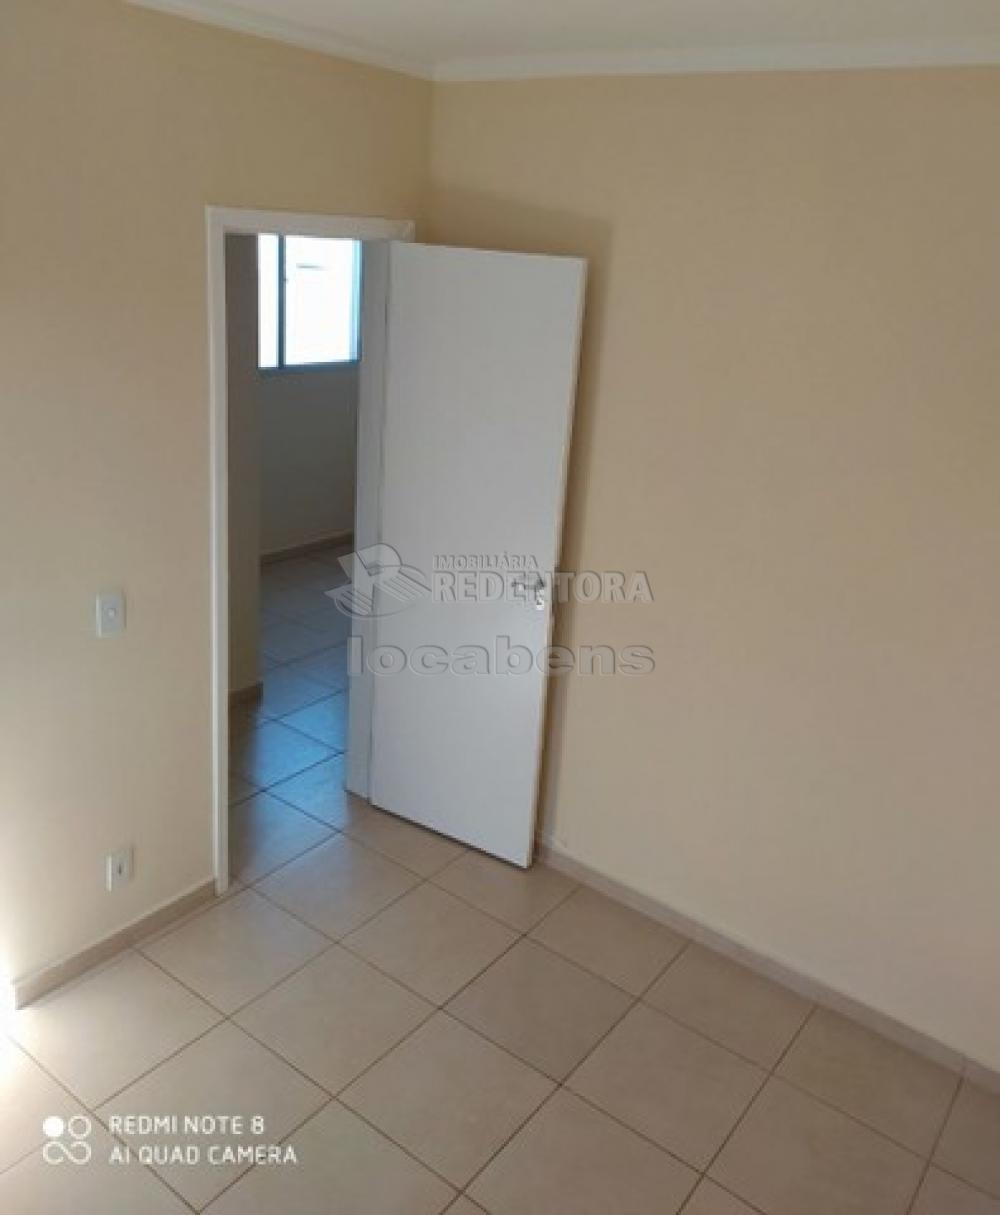 Comprar Apartamento / Padrão em São José do Rio Preto R$ 160.000,00 - Foto 6